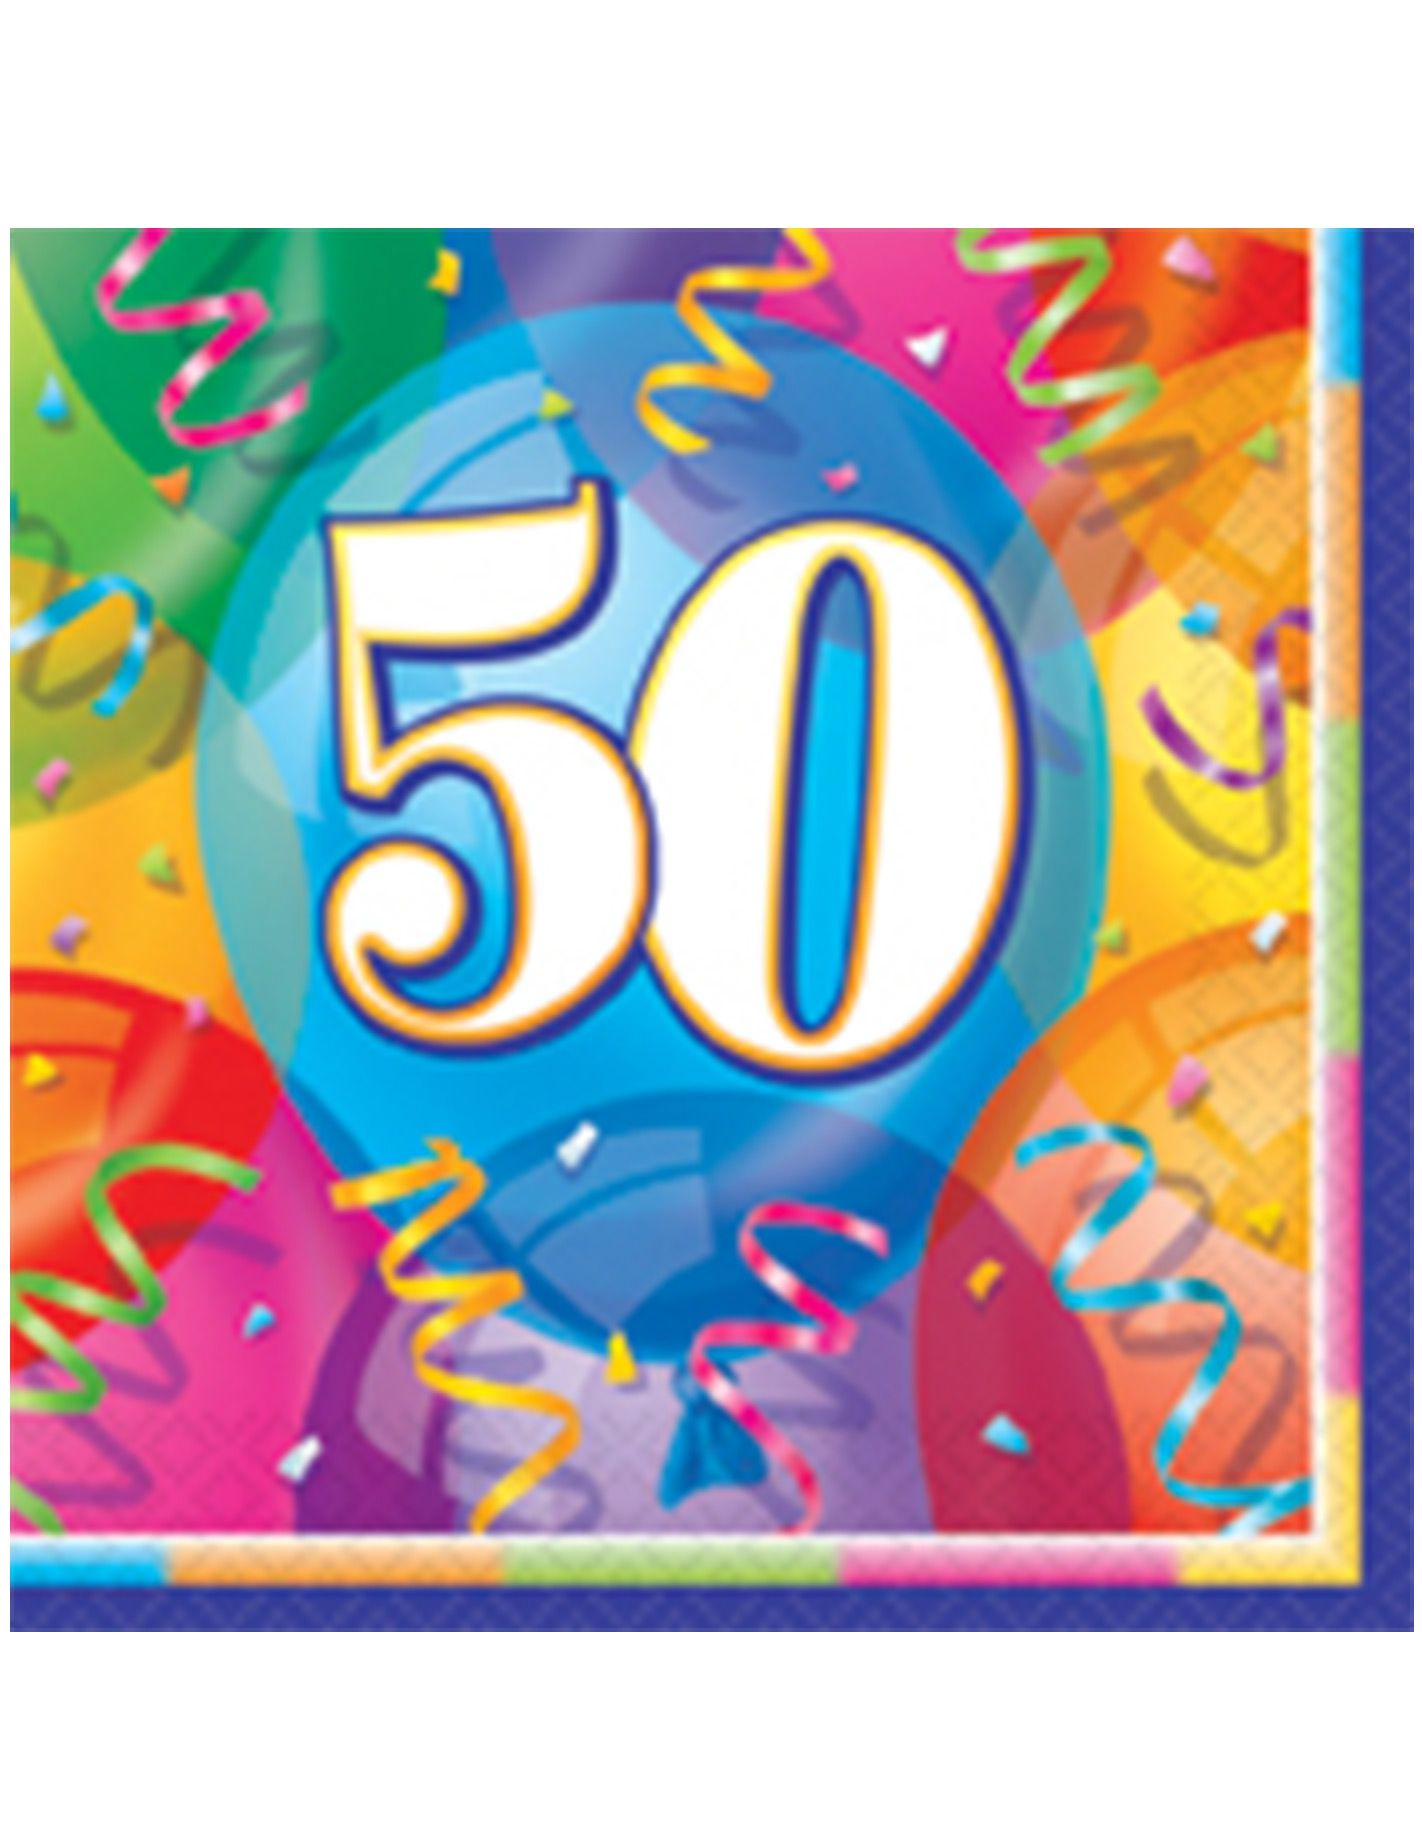 Carte anniversaire à imprimer 50 ans gratuite